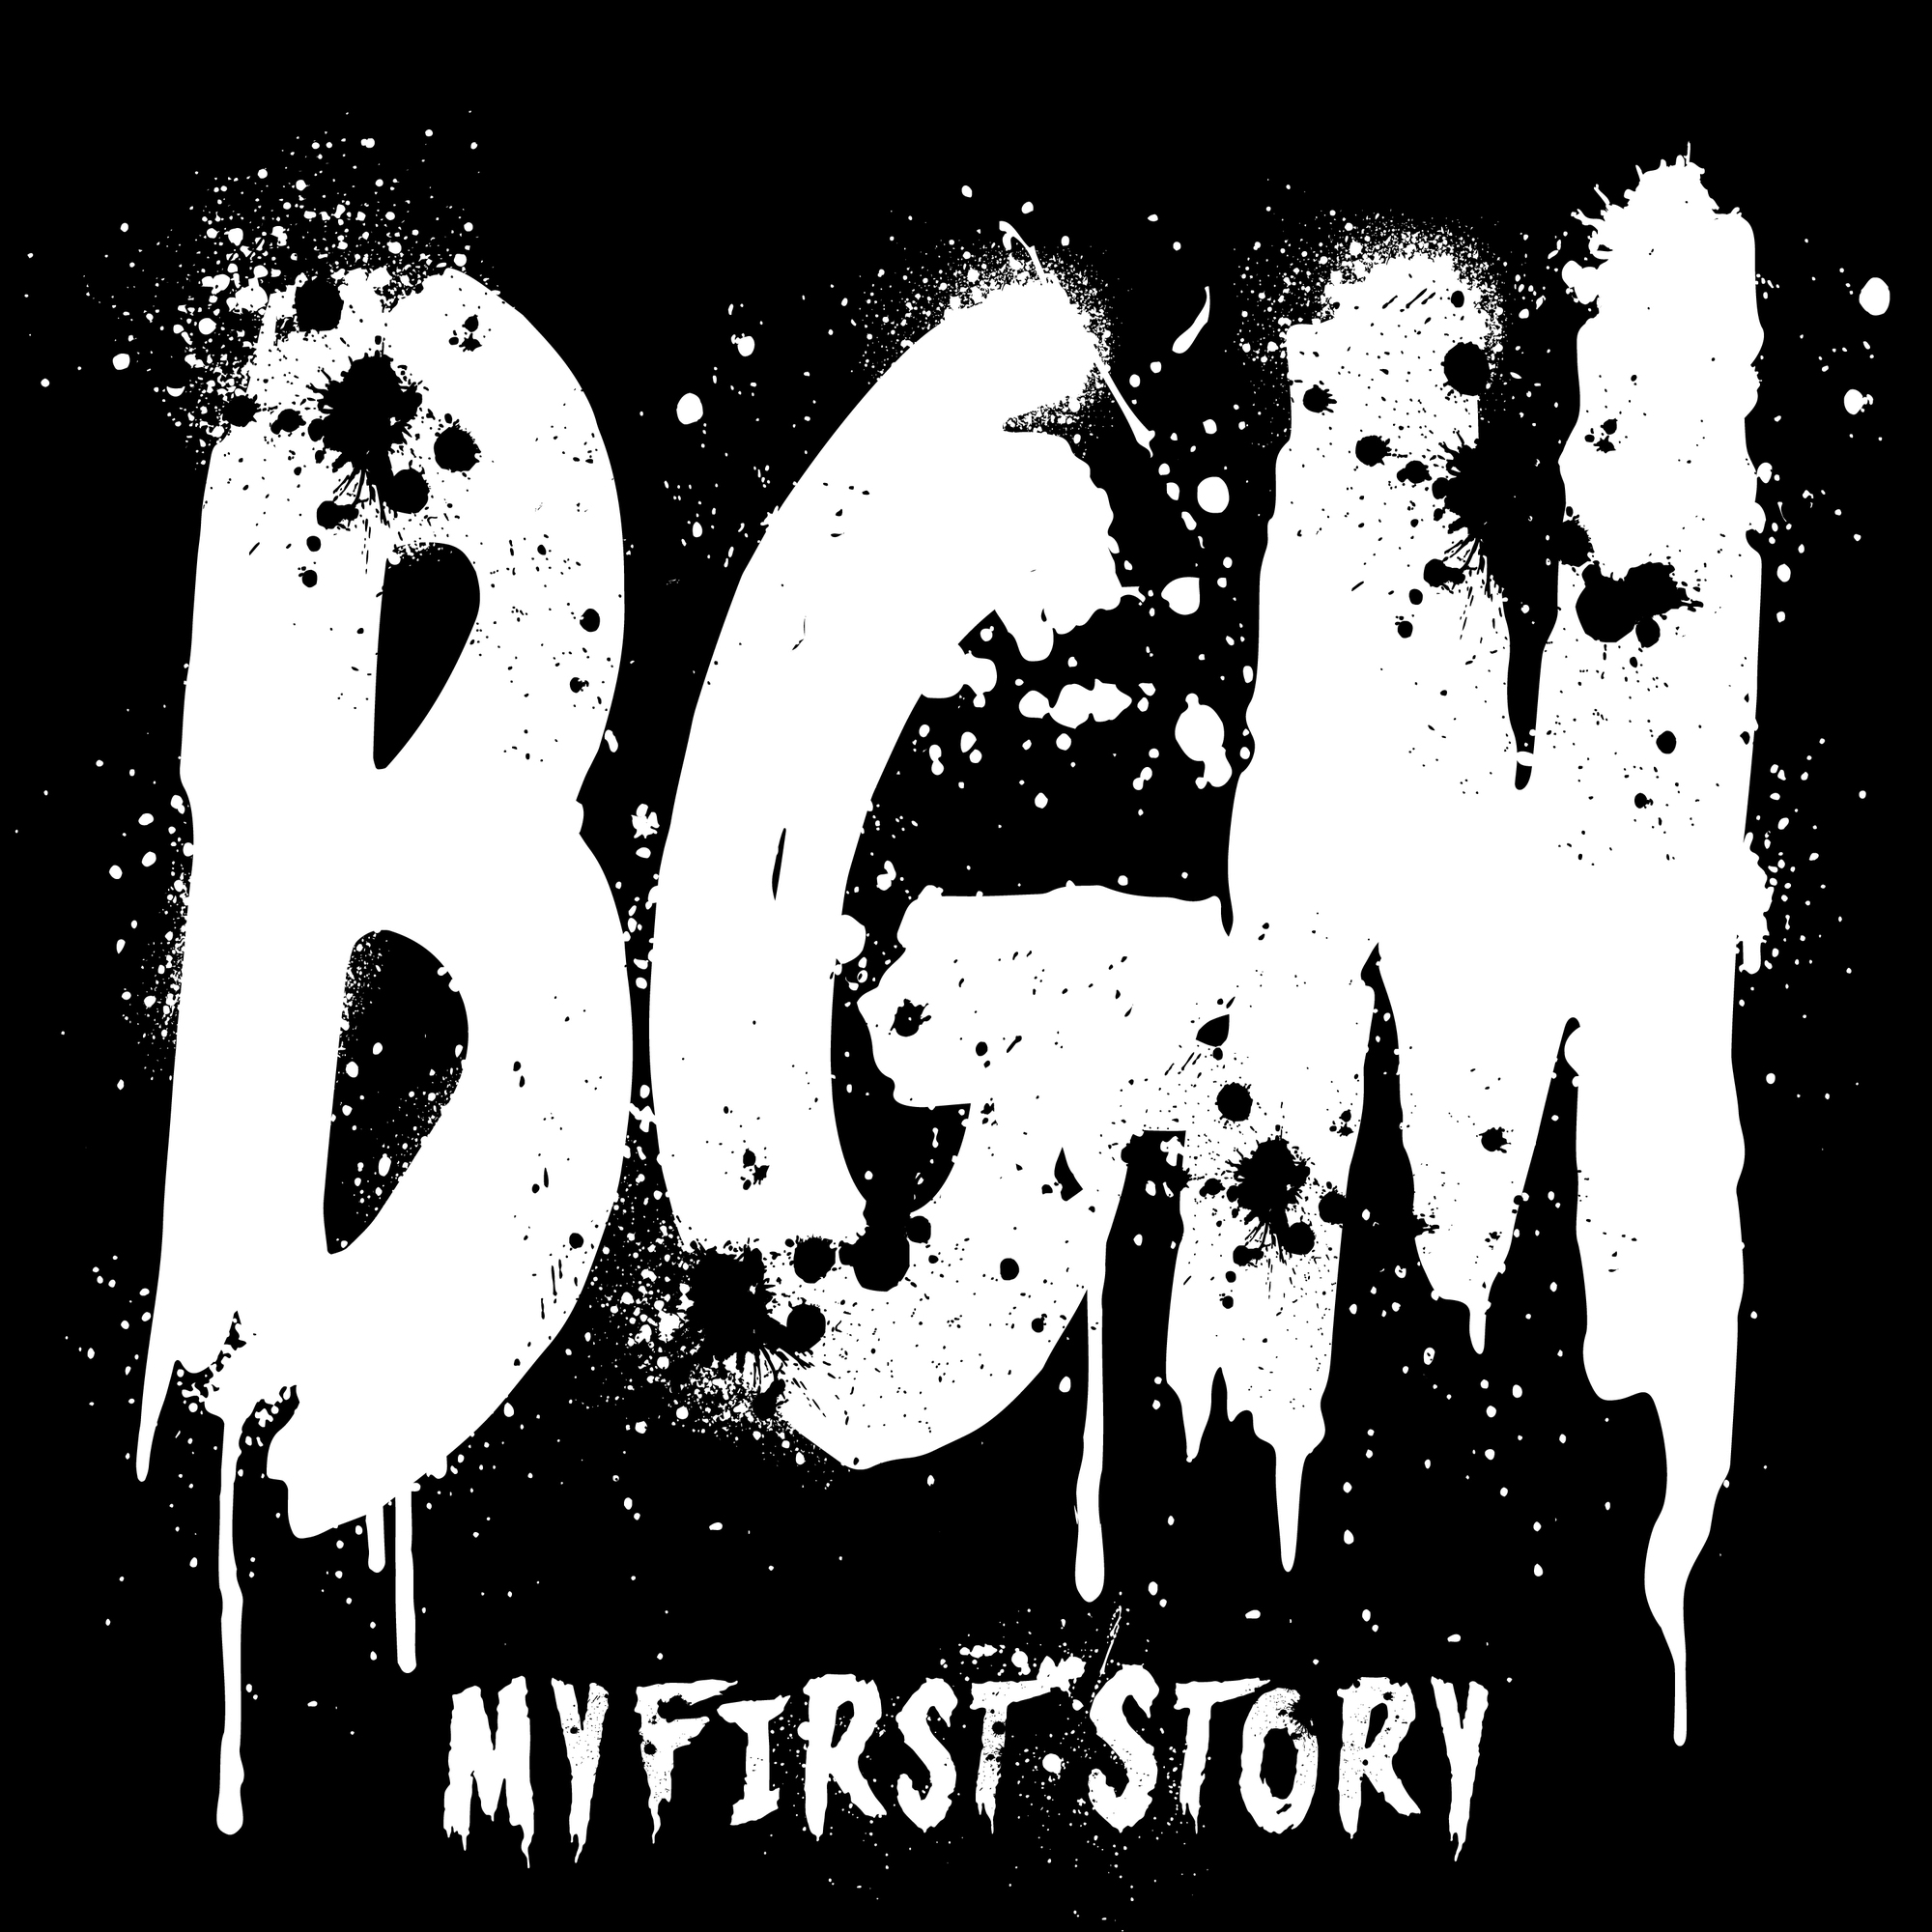 配信限定 My First Story Bgm Sleeping 2タイトル同時リリース決定 My First Story Official Site My First Story Official Member S Club Storyteller